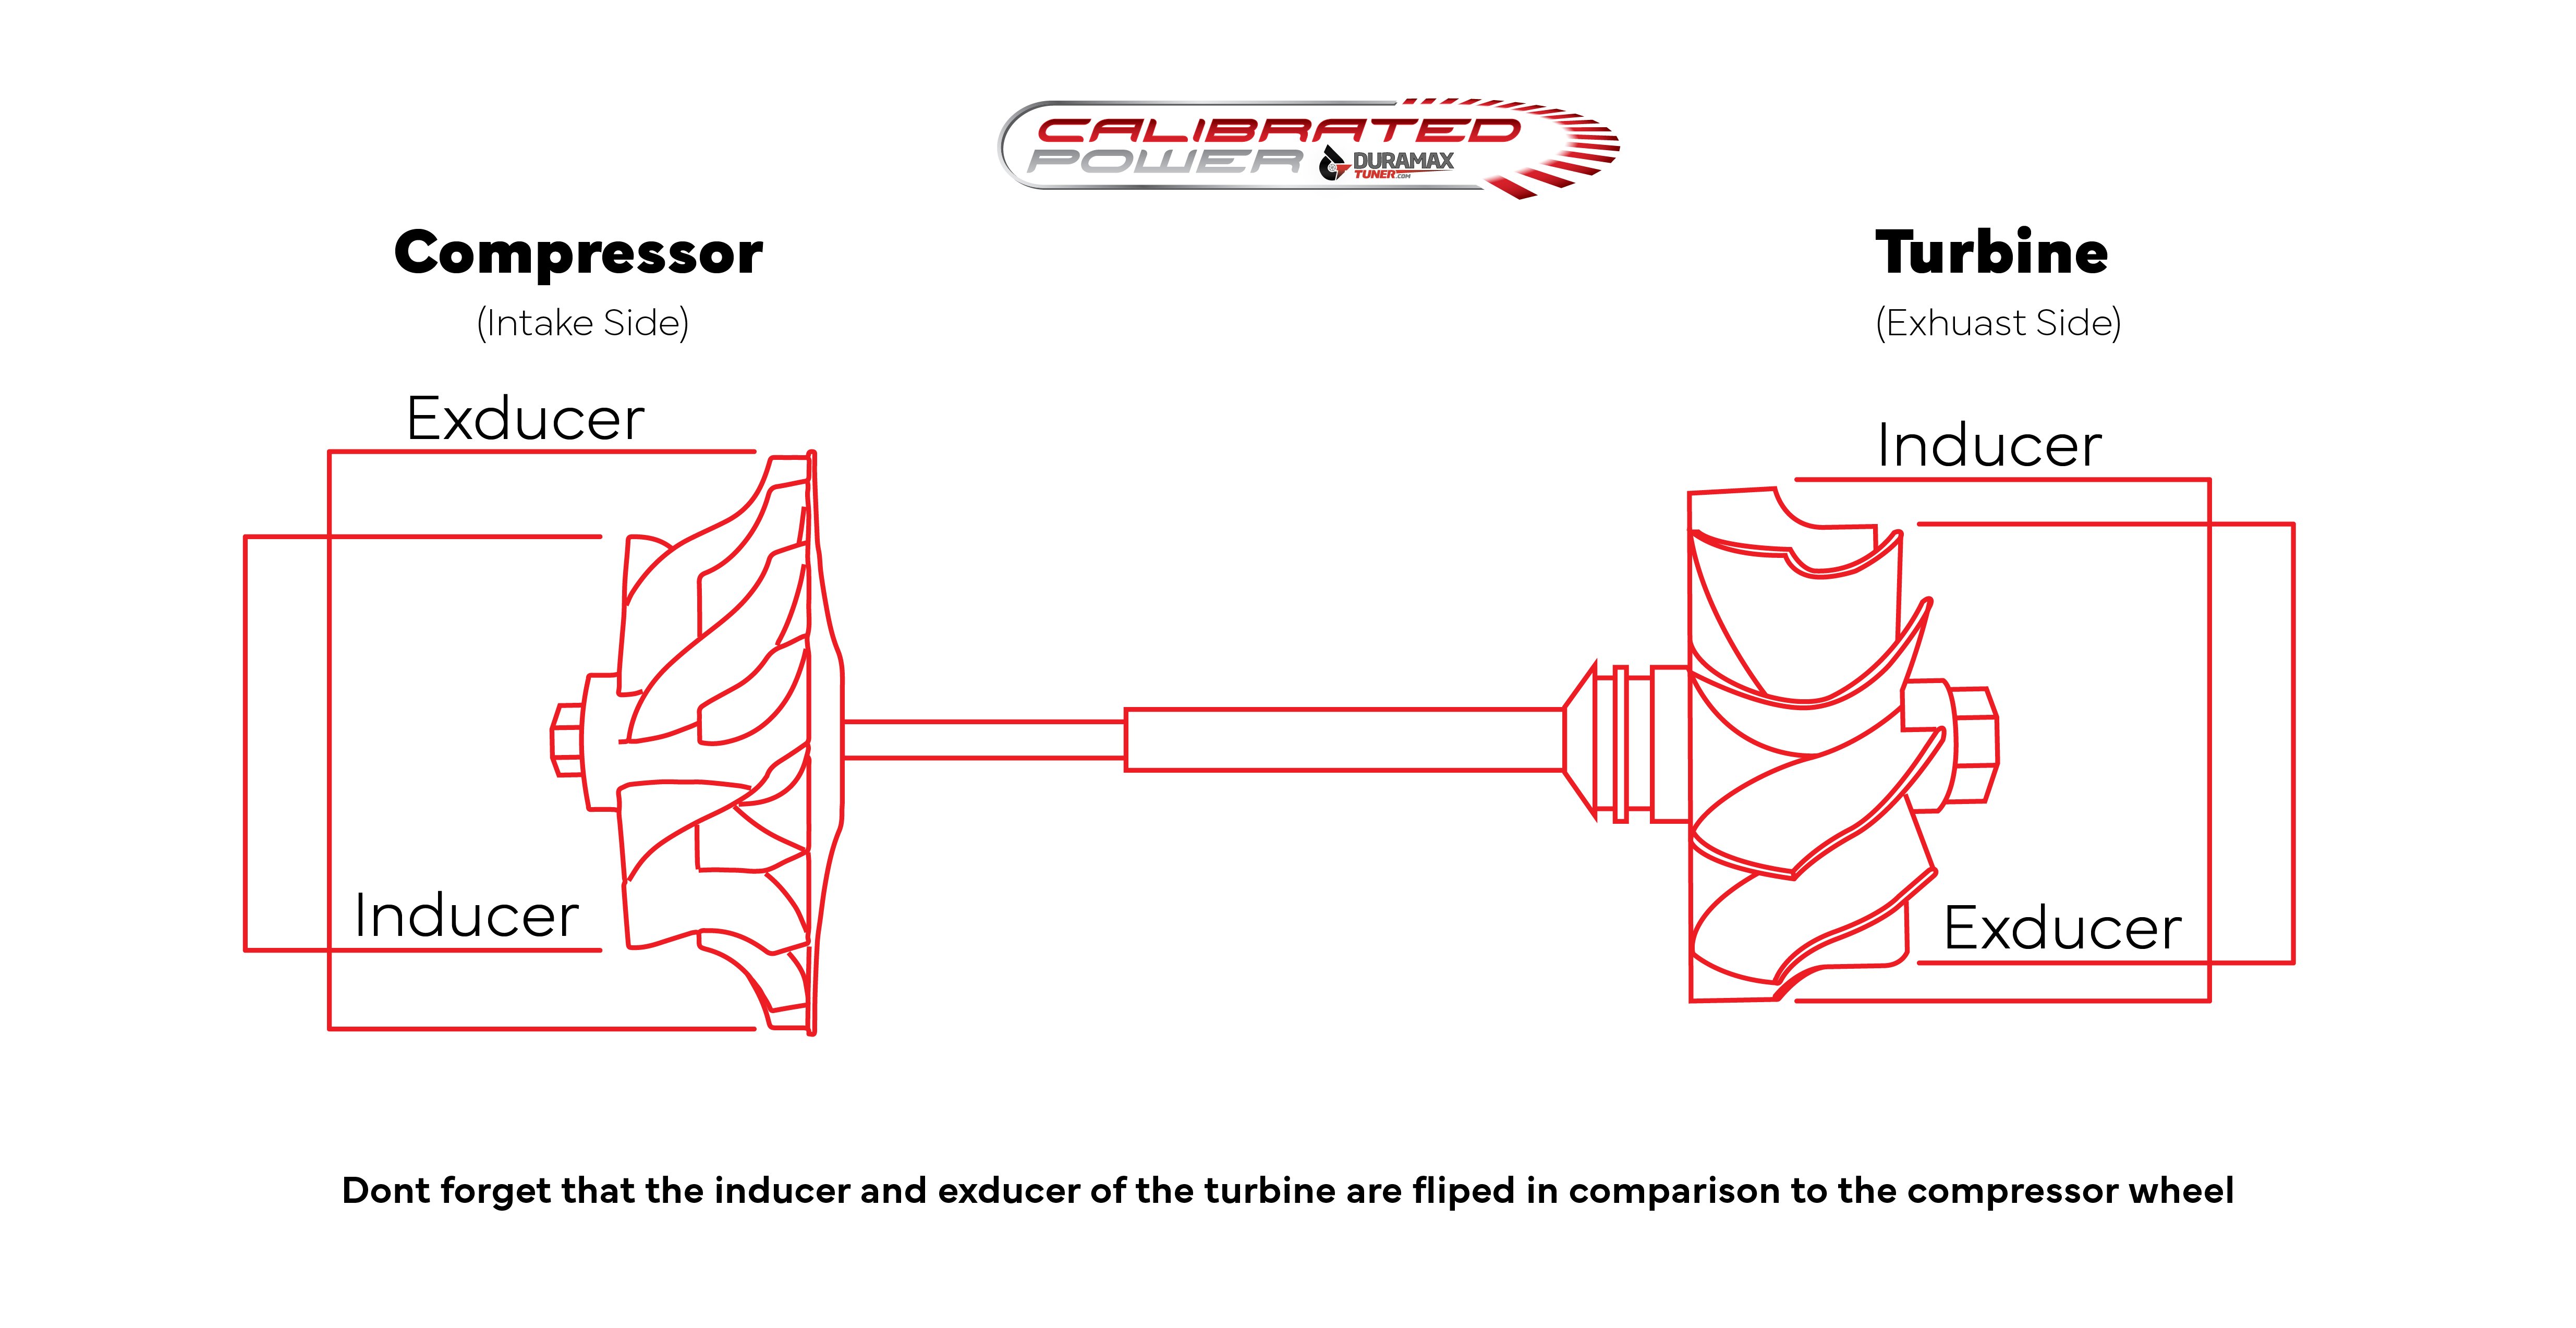 Compressor turbine comparison